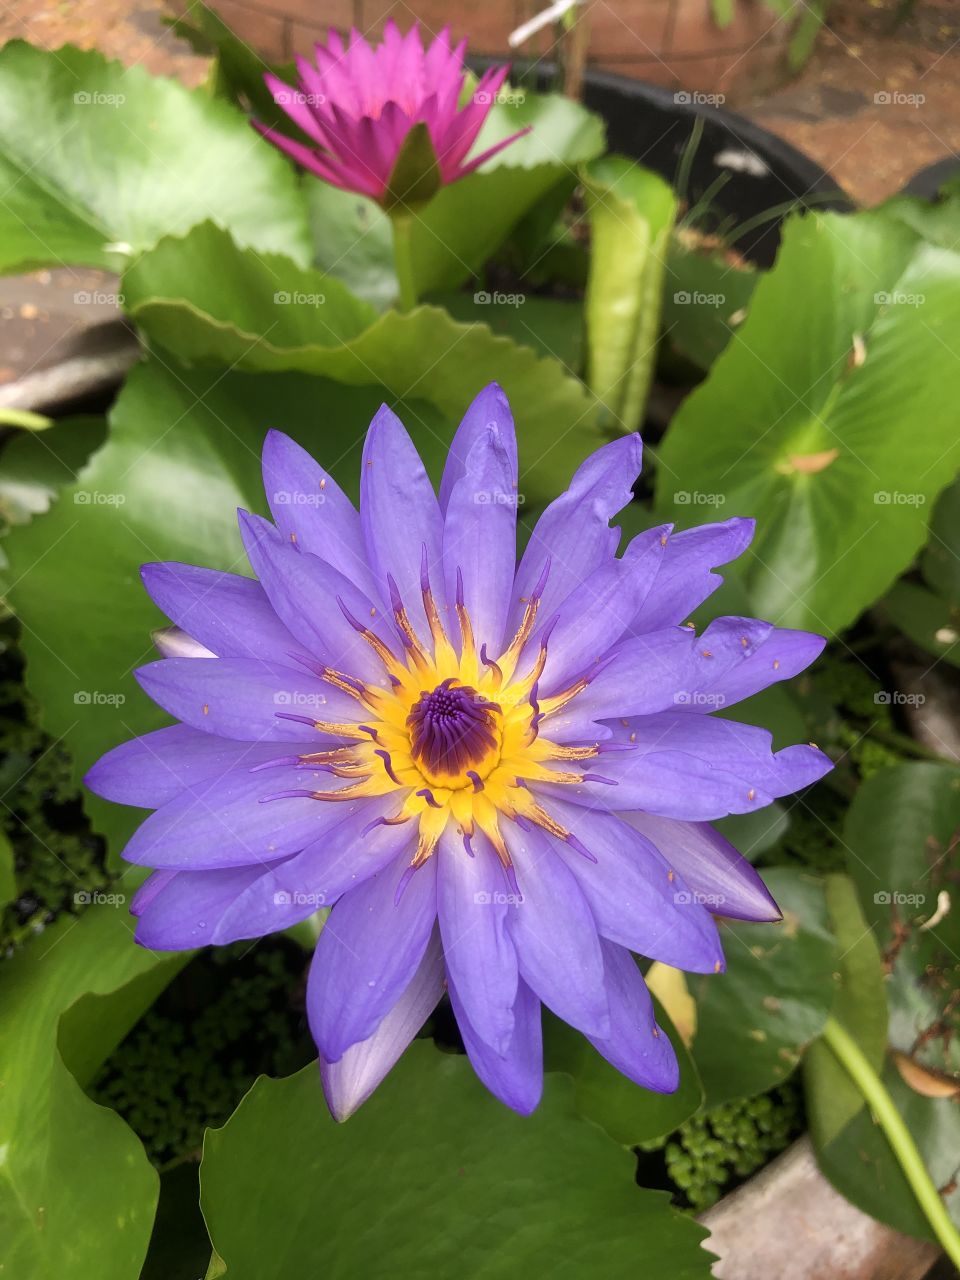 Flower # purple lotus # blooming 